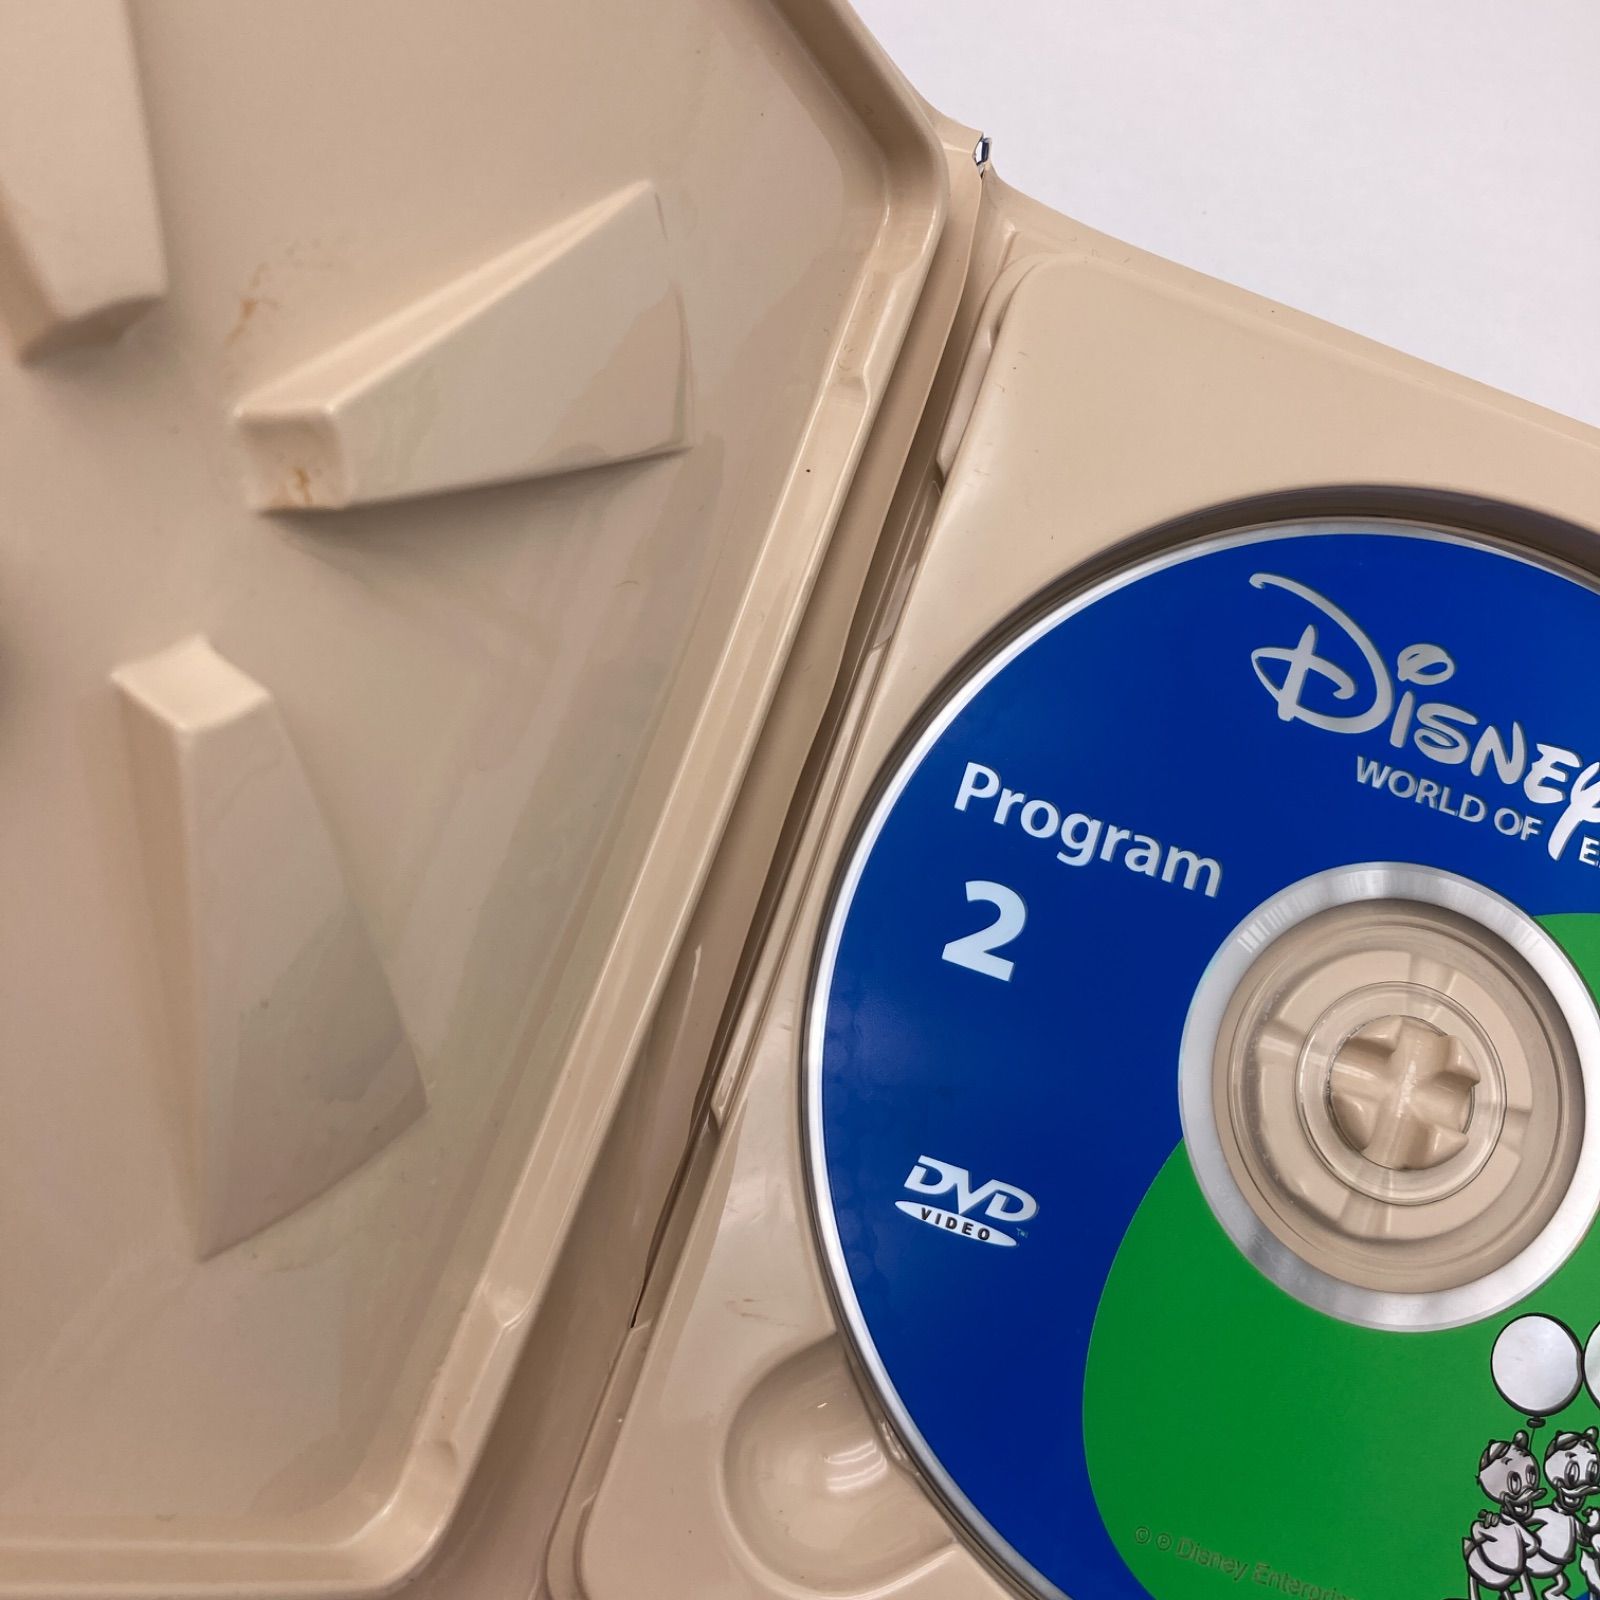 2004年購入 ストレートプレイDVD　ディズニー英語システム　DWE　Disney　ワールドファミリー　中古　501405